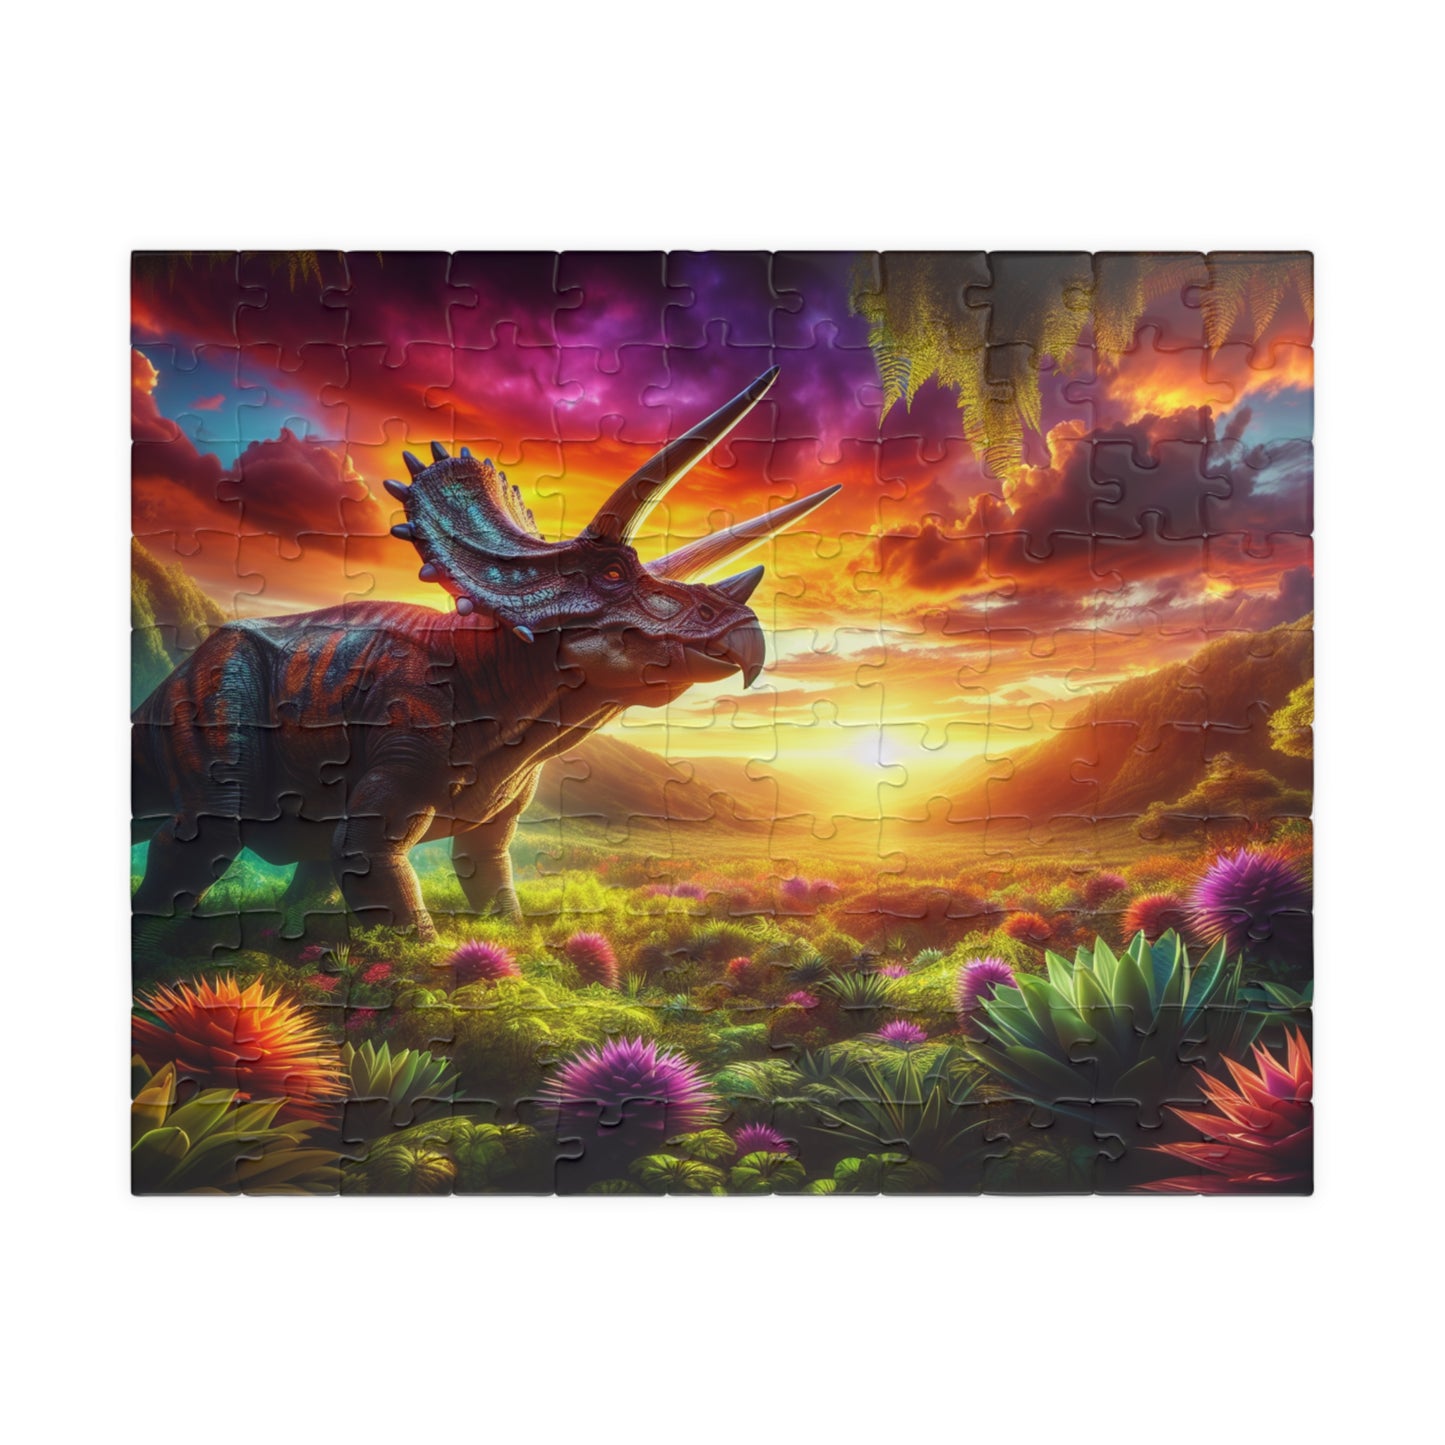 Triceratops Dinosaur Puzzle